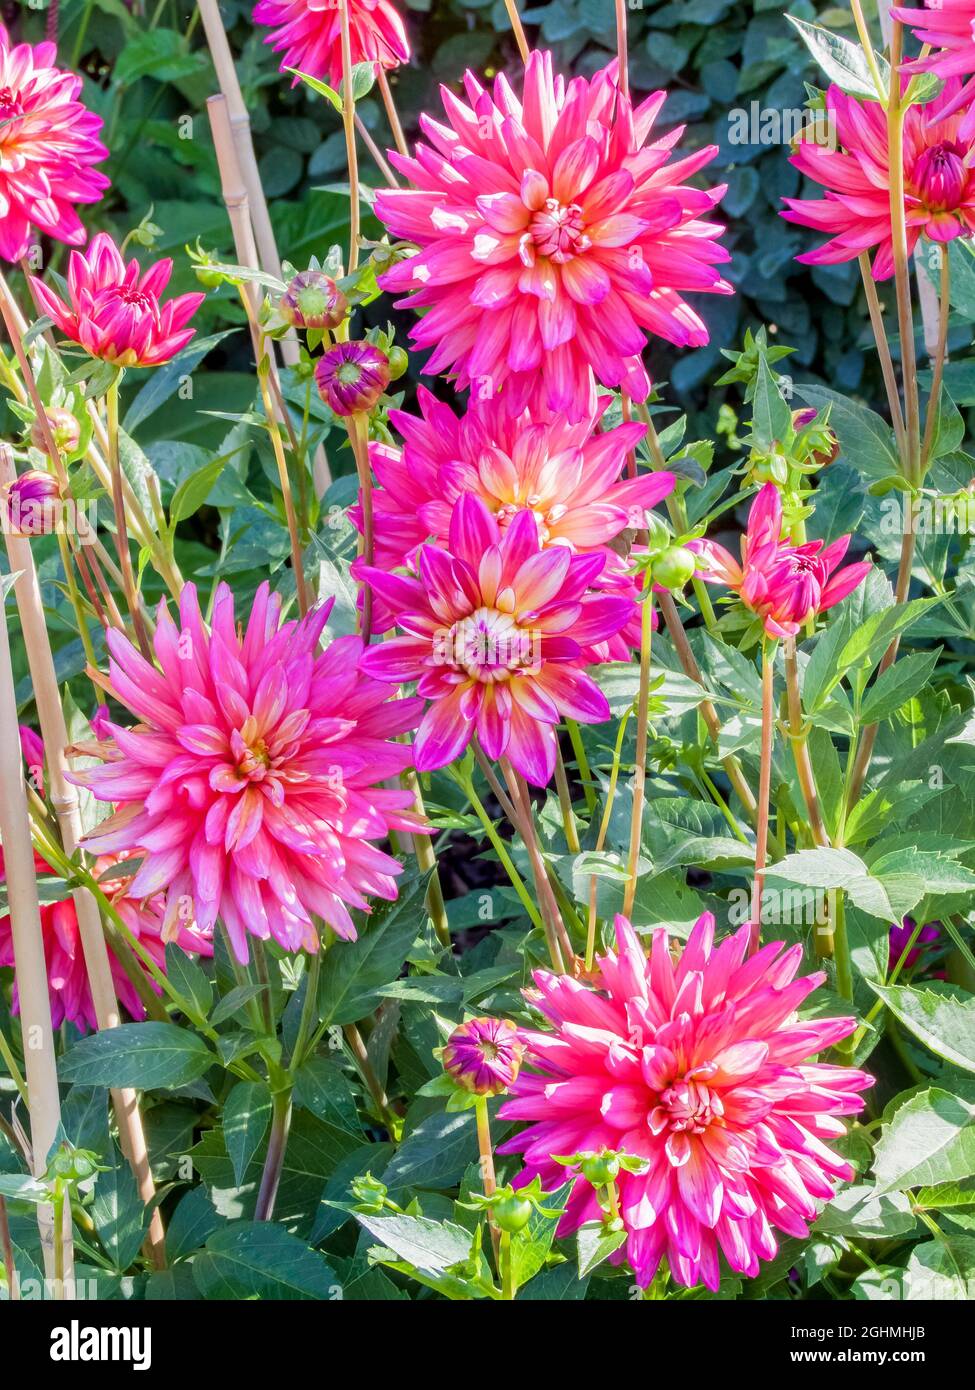 Dahlia 'Queeny' in bloom in a garden Stock Photo